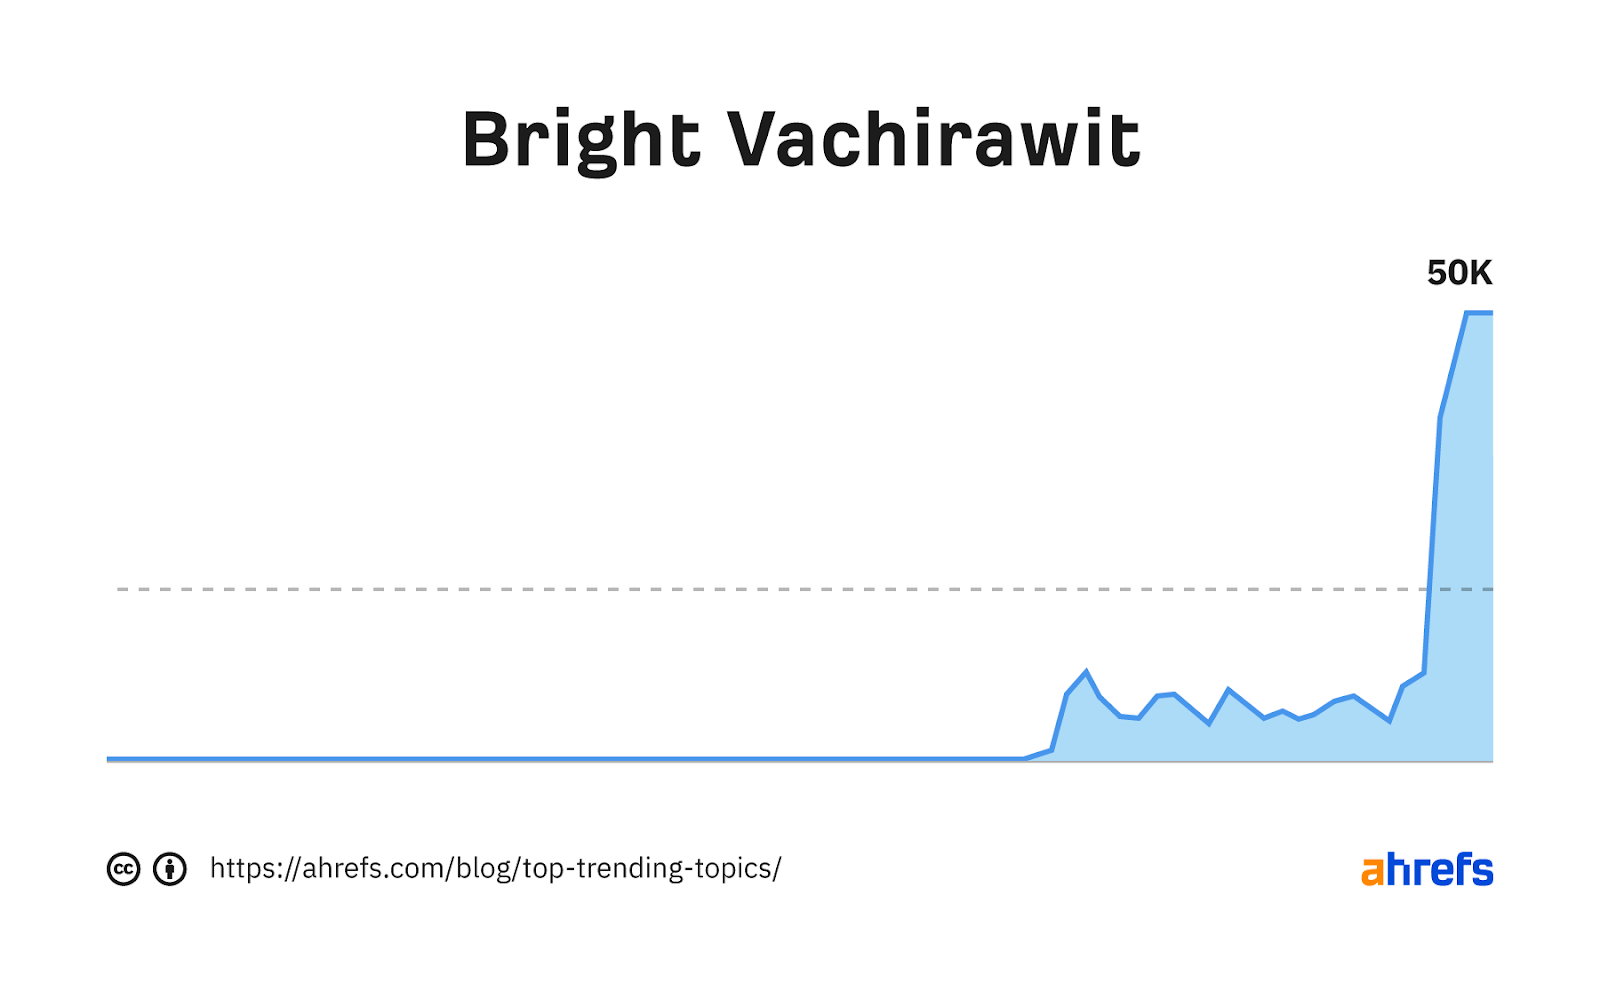 Gráfico de tendencia de la palabra clave "Vachirawit brillante"